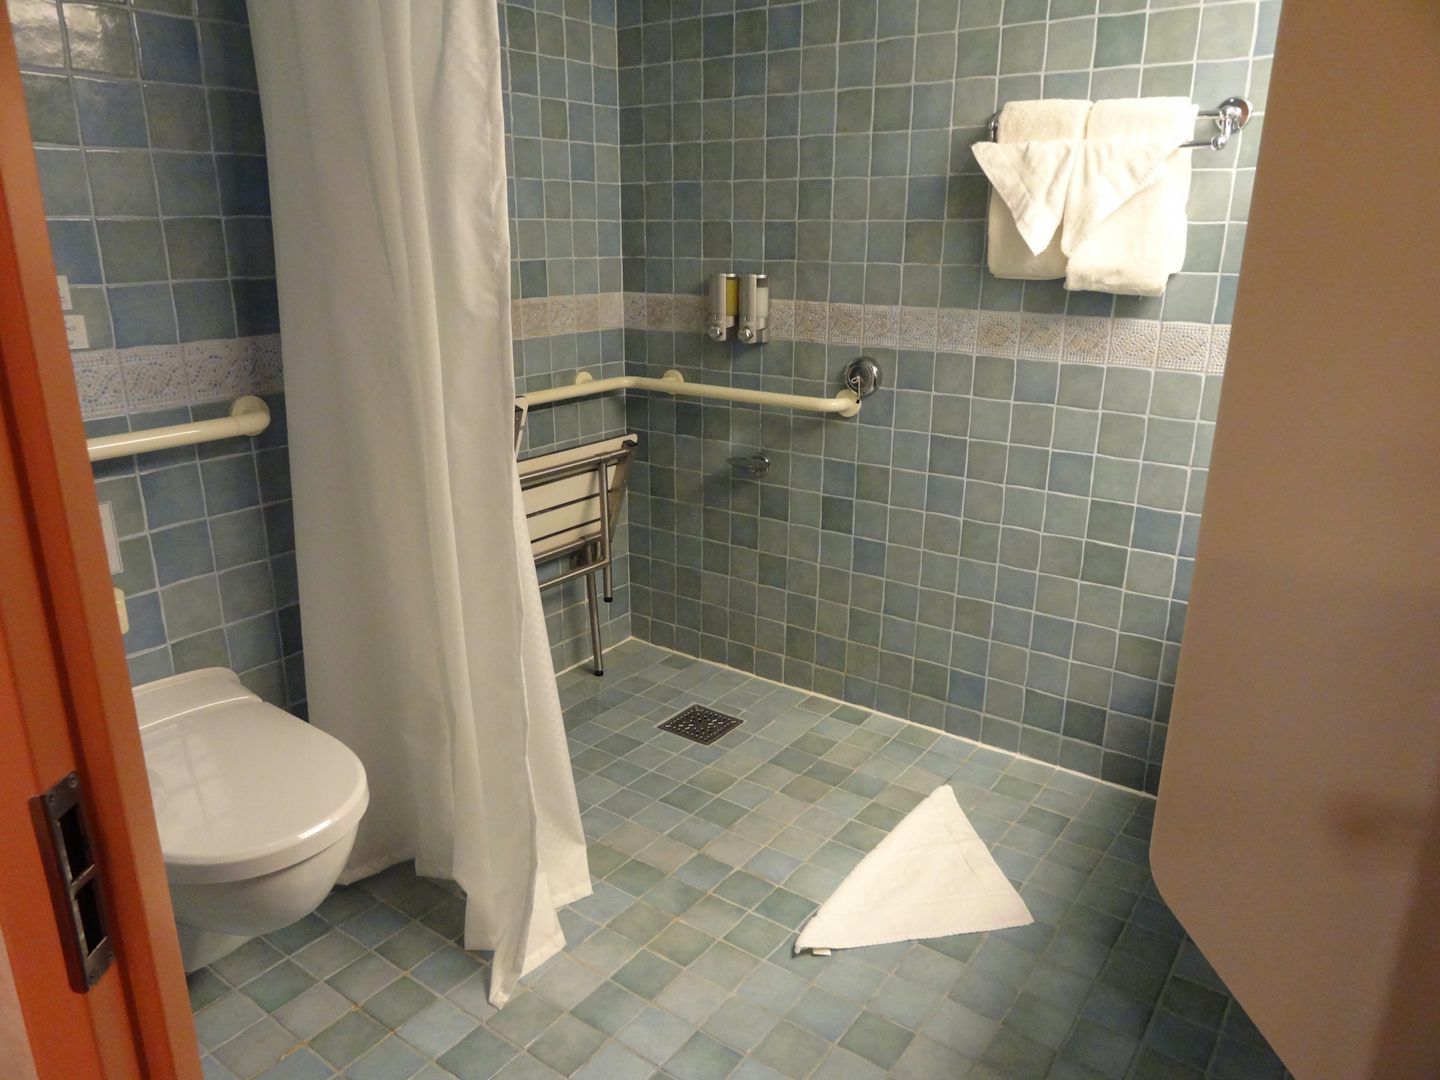 Bathroom set up from door but not showing basin/mirror